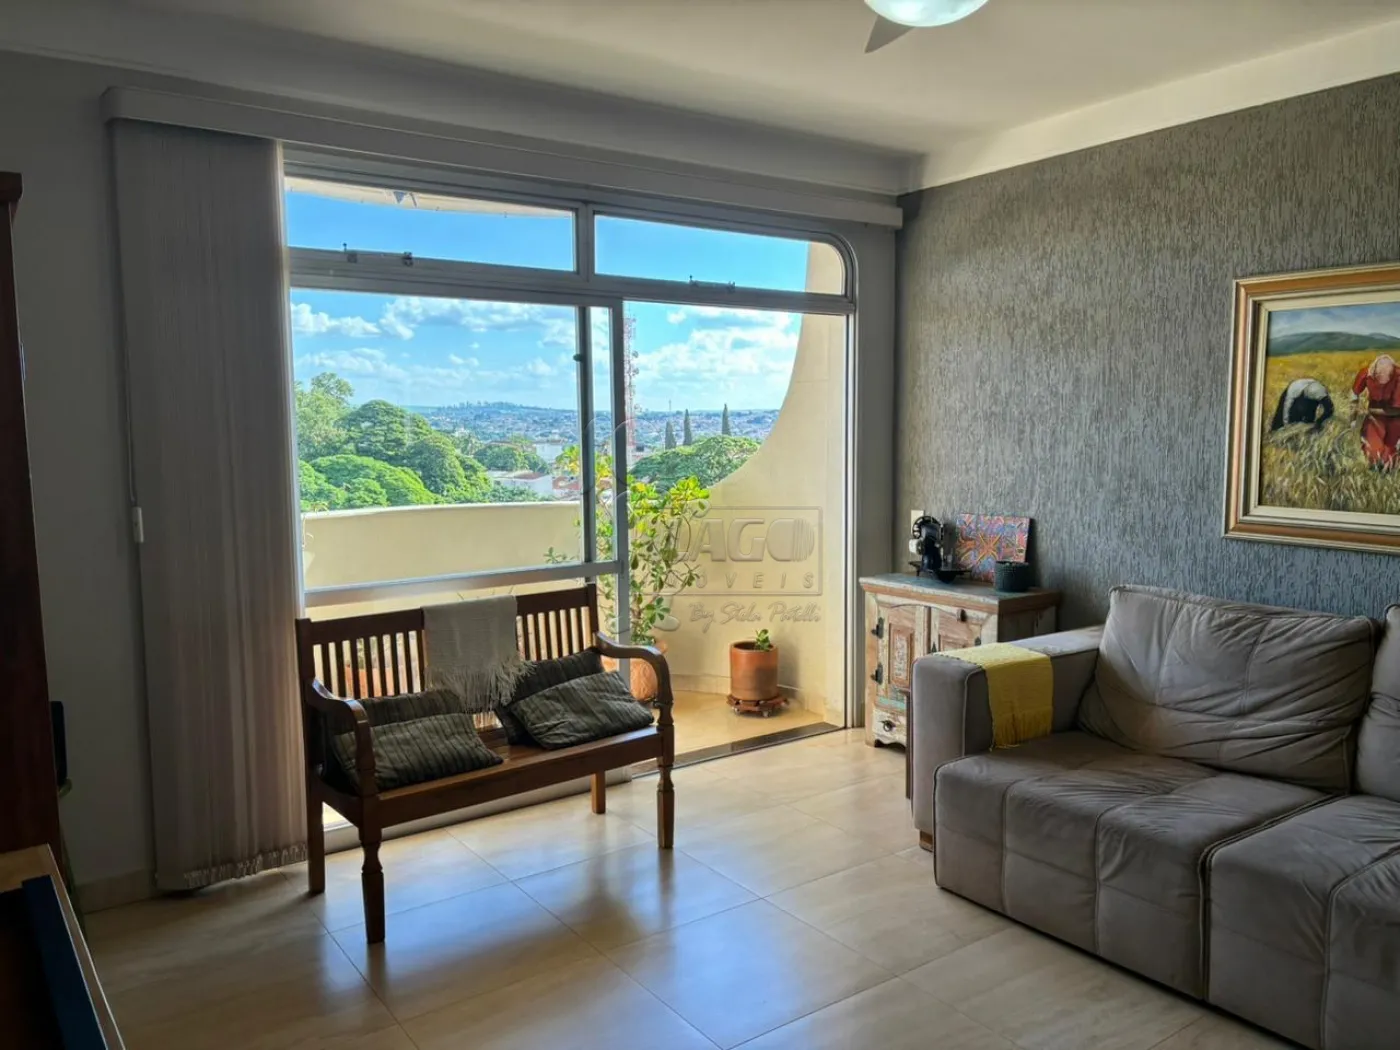 Comprar Apartamento / Padrão em Ribeirão Preto R$ 550.000,00 - Foto 1